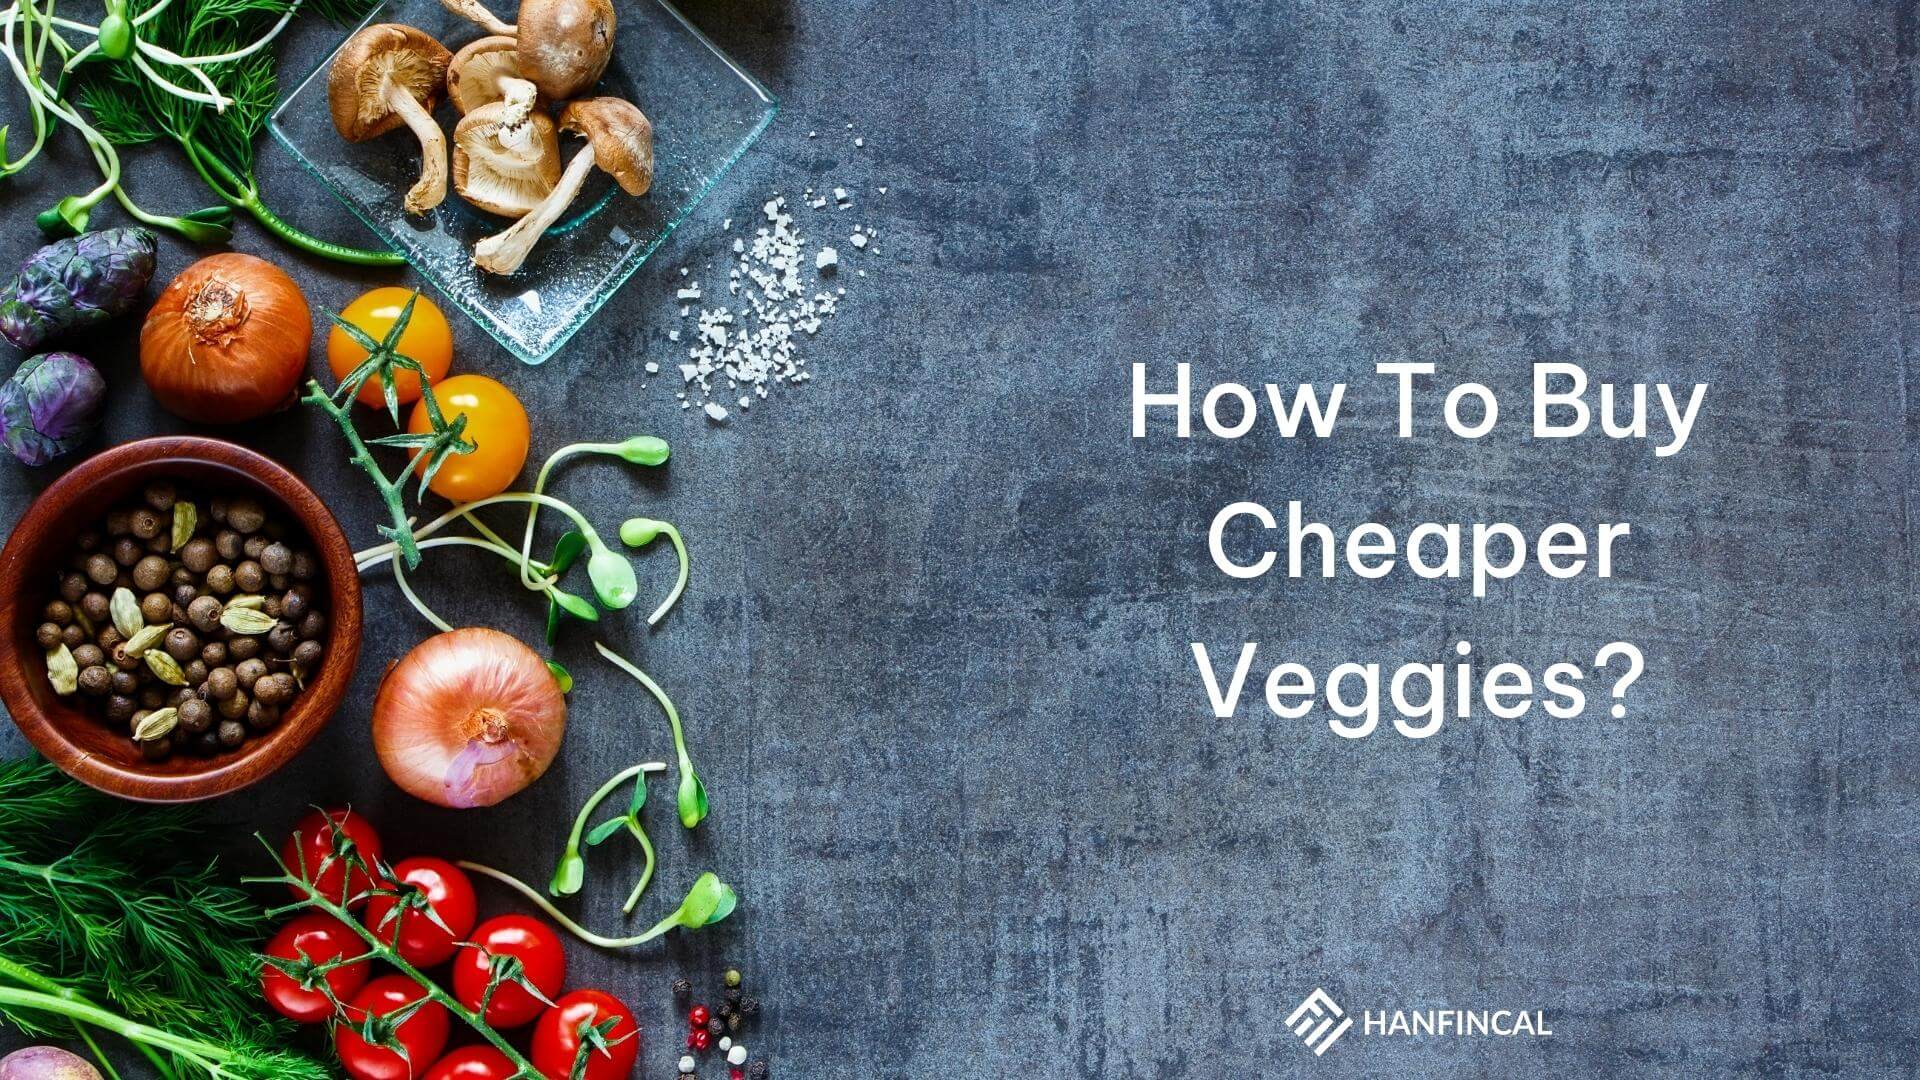 How To Buy Cheaper Veggies